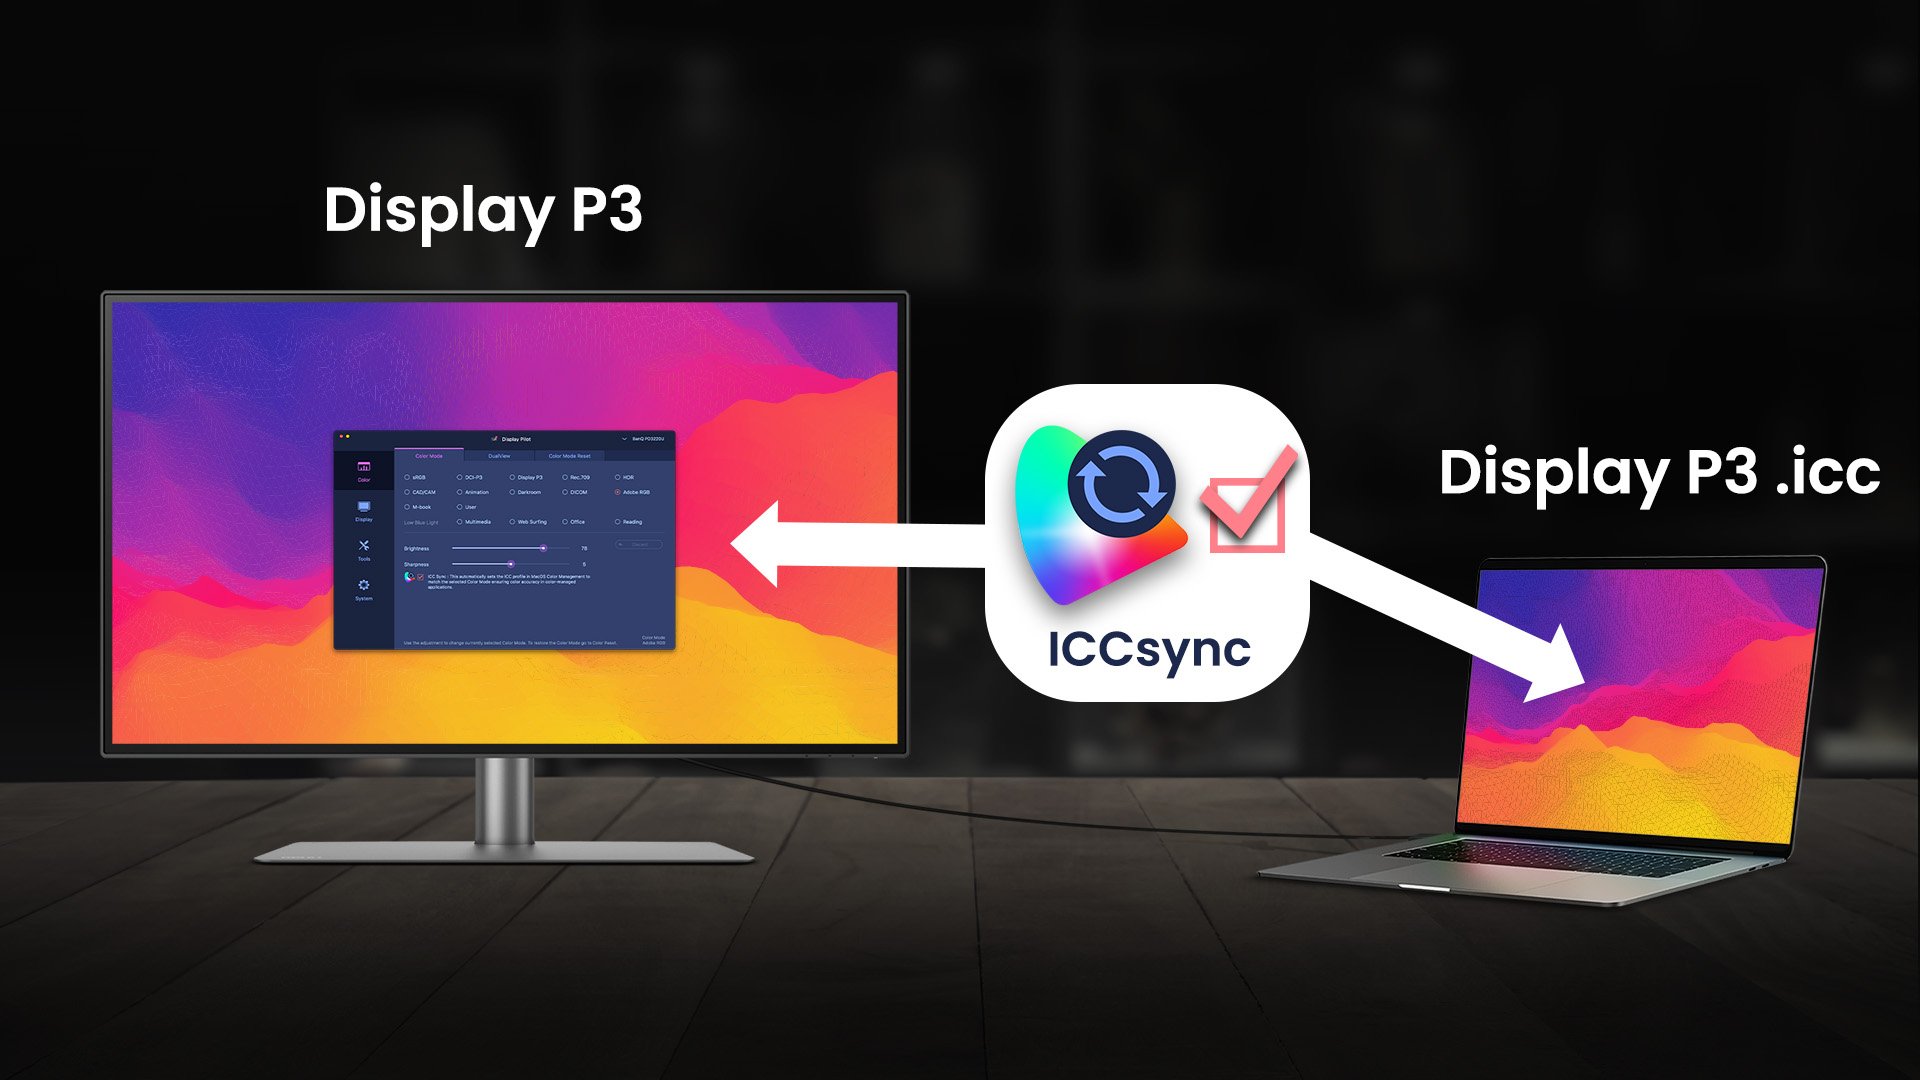 ICCsync tự động khớp và đồng bộ hóa cấu hình ICC trên màn hình khi bạn thay đổi chế độ màu, cũng như giữa màn hình MacBook® và màn hình BenQ